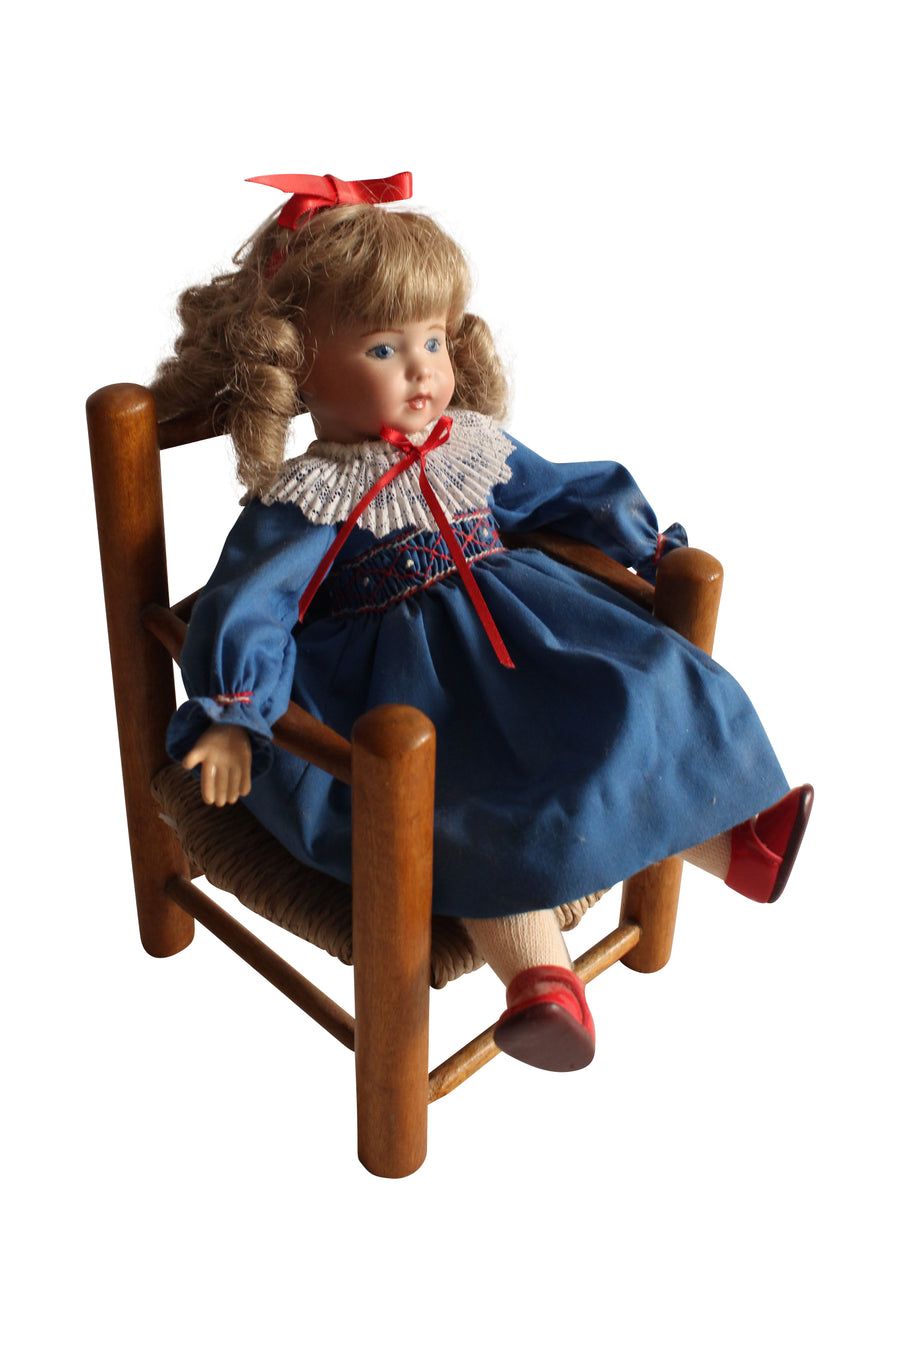 Doll + Chair